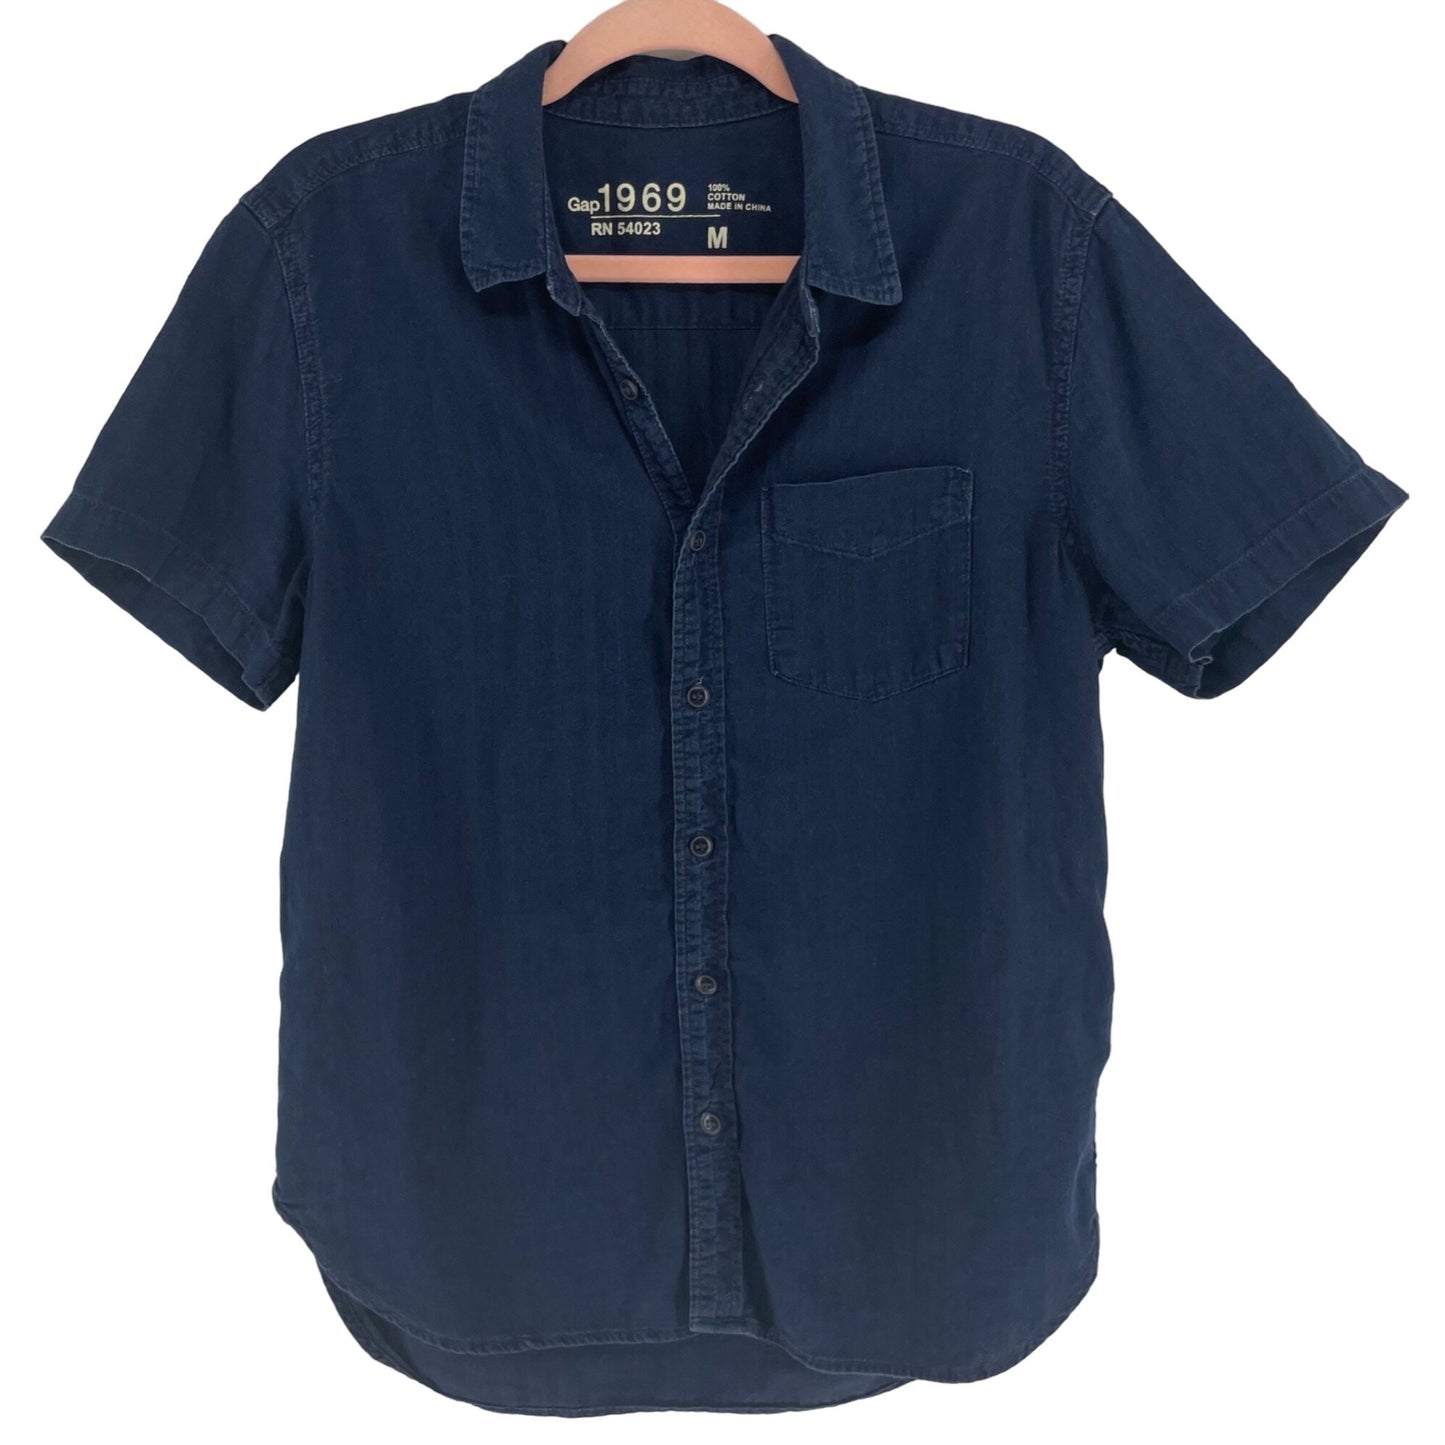 GAP Men's Size Medium Short-Sleeved Collared Button-Down Navy Denim Top